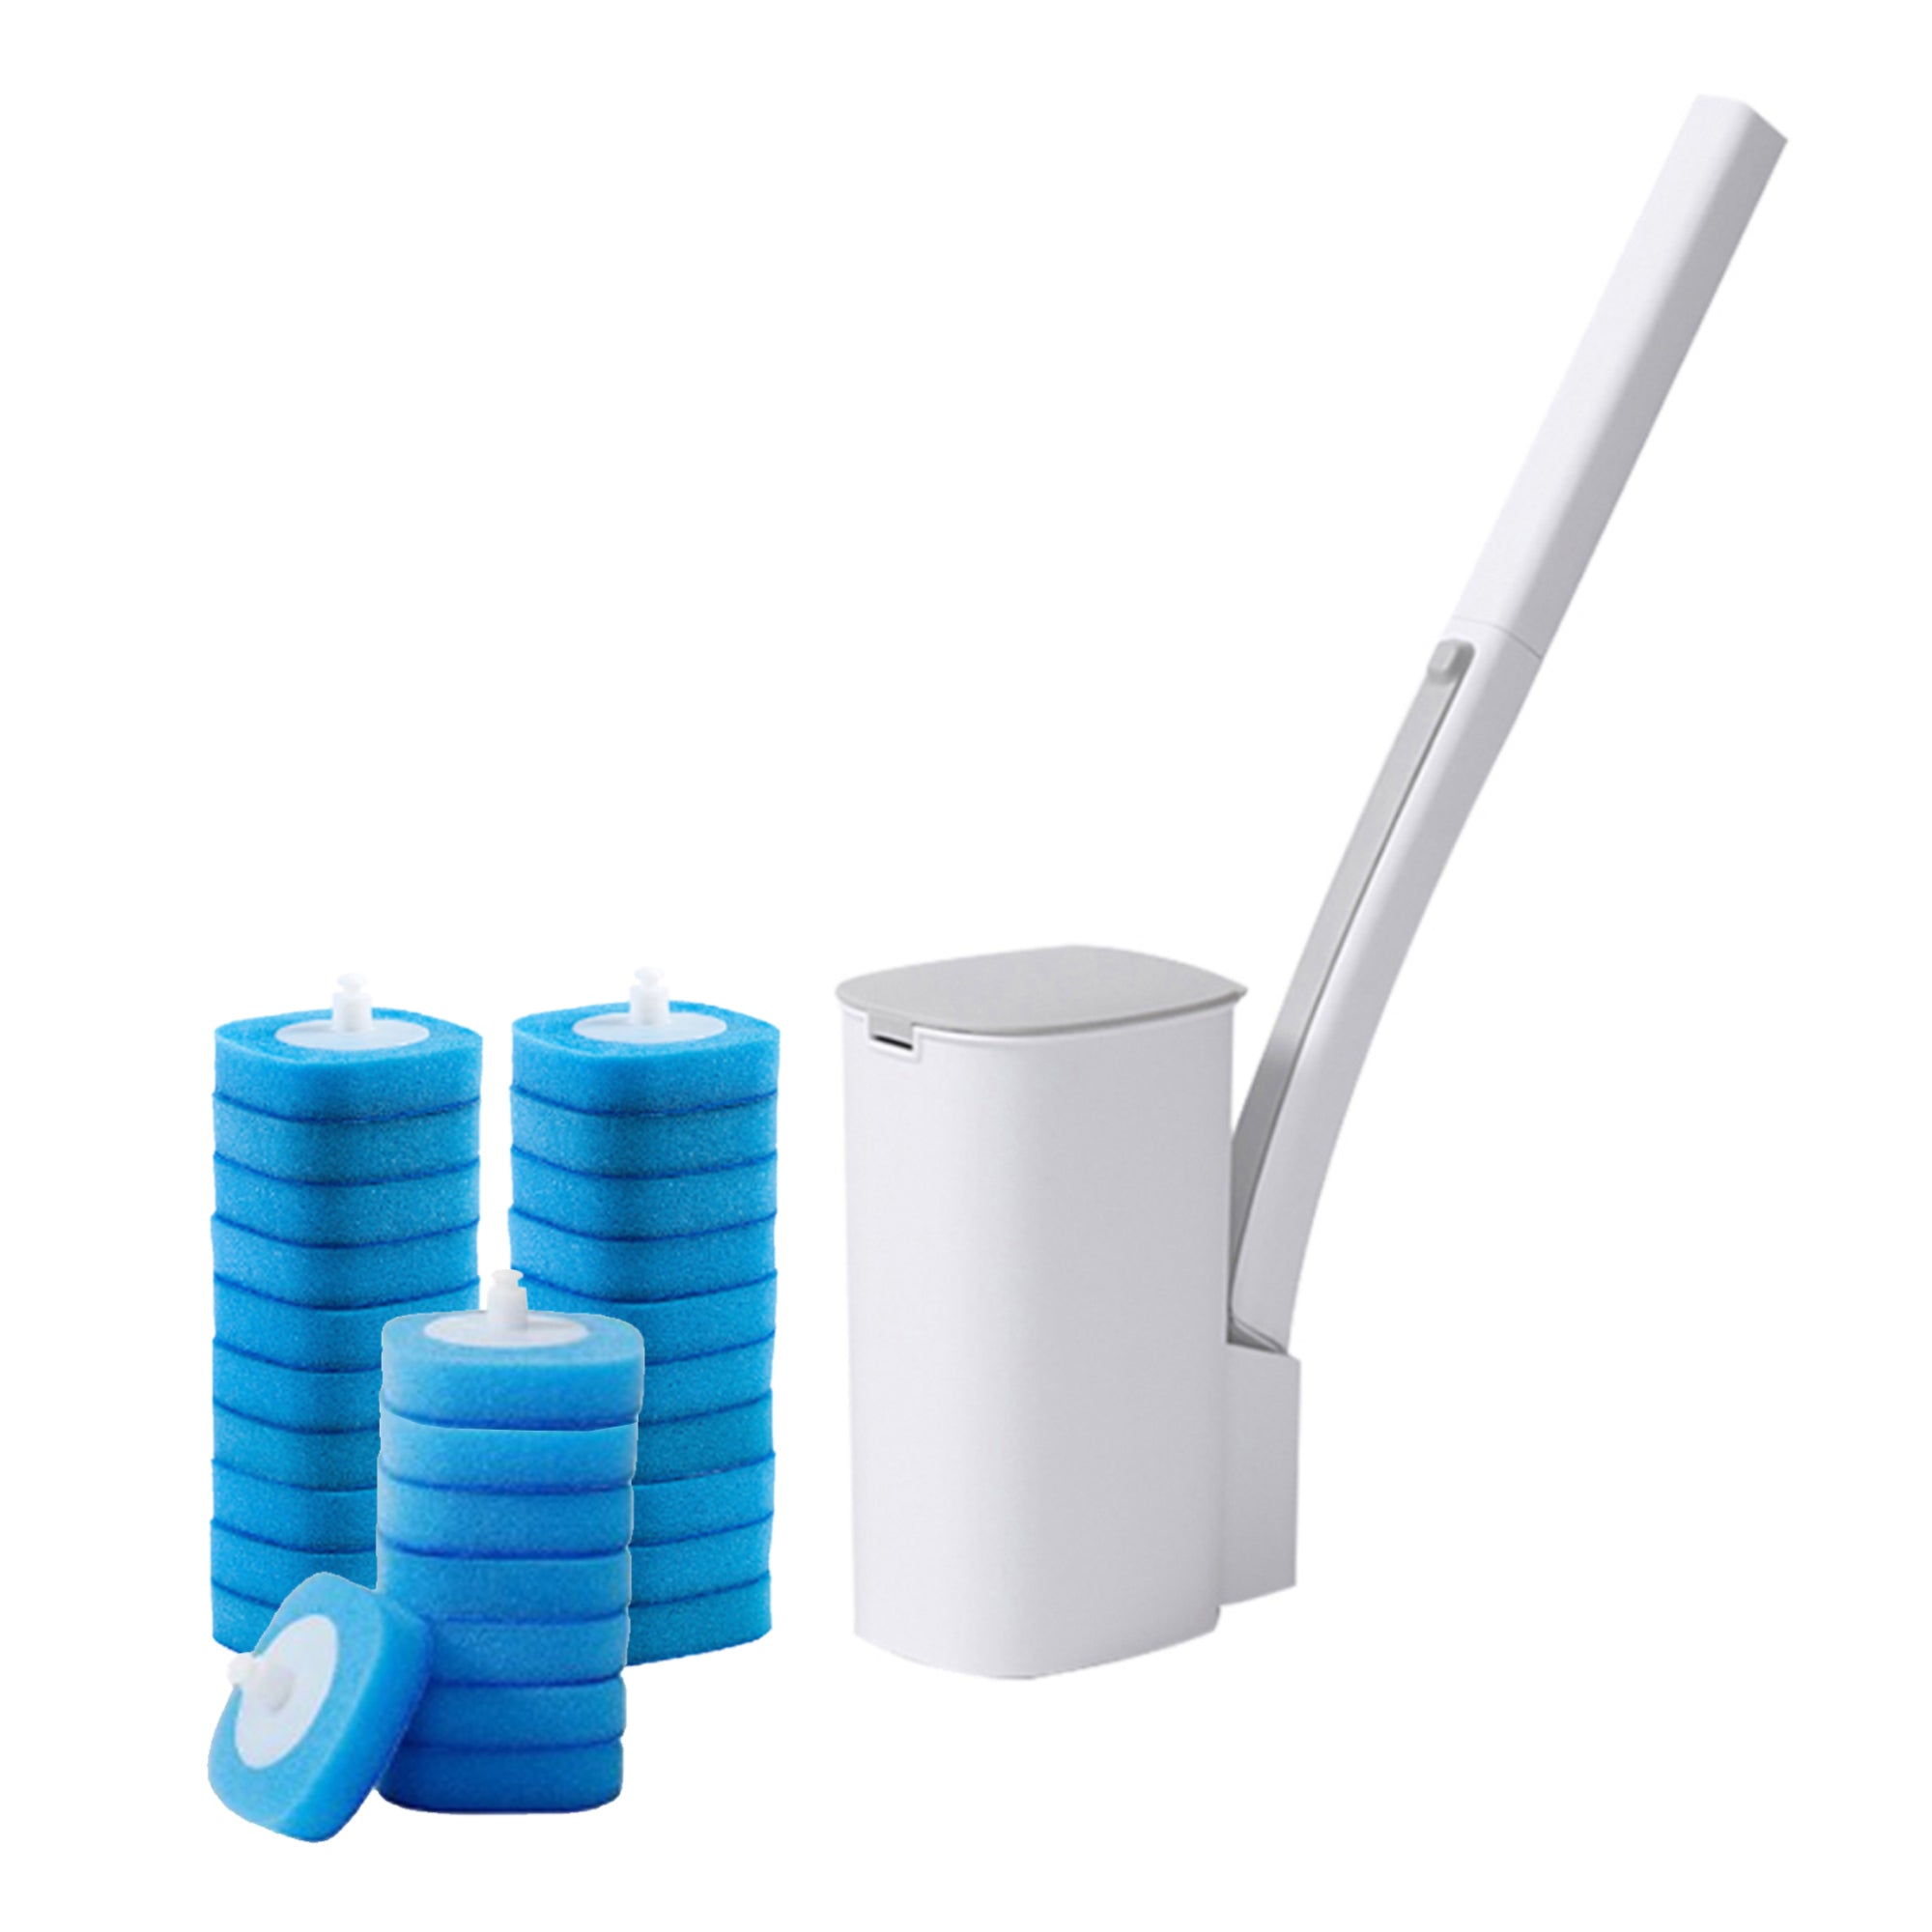 Tyroler Bright Tools Toilet Brush Set,Bathroom Cleaning Toilet Bowl Brush Holder